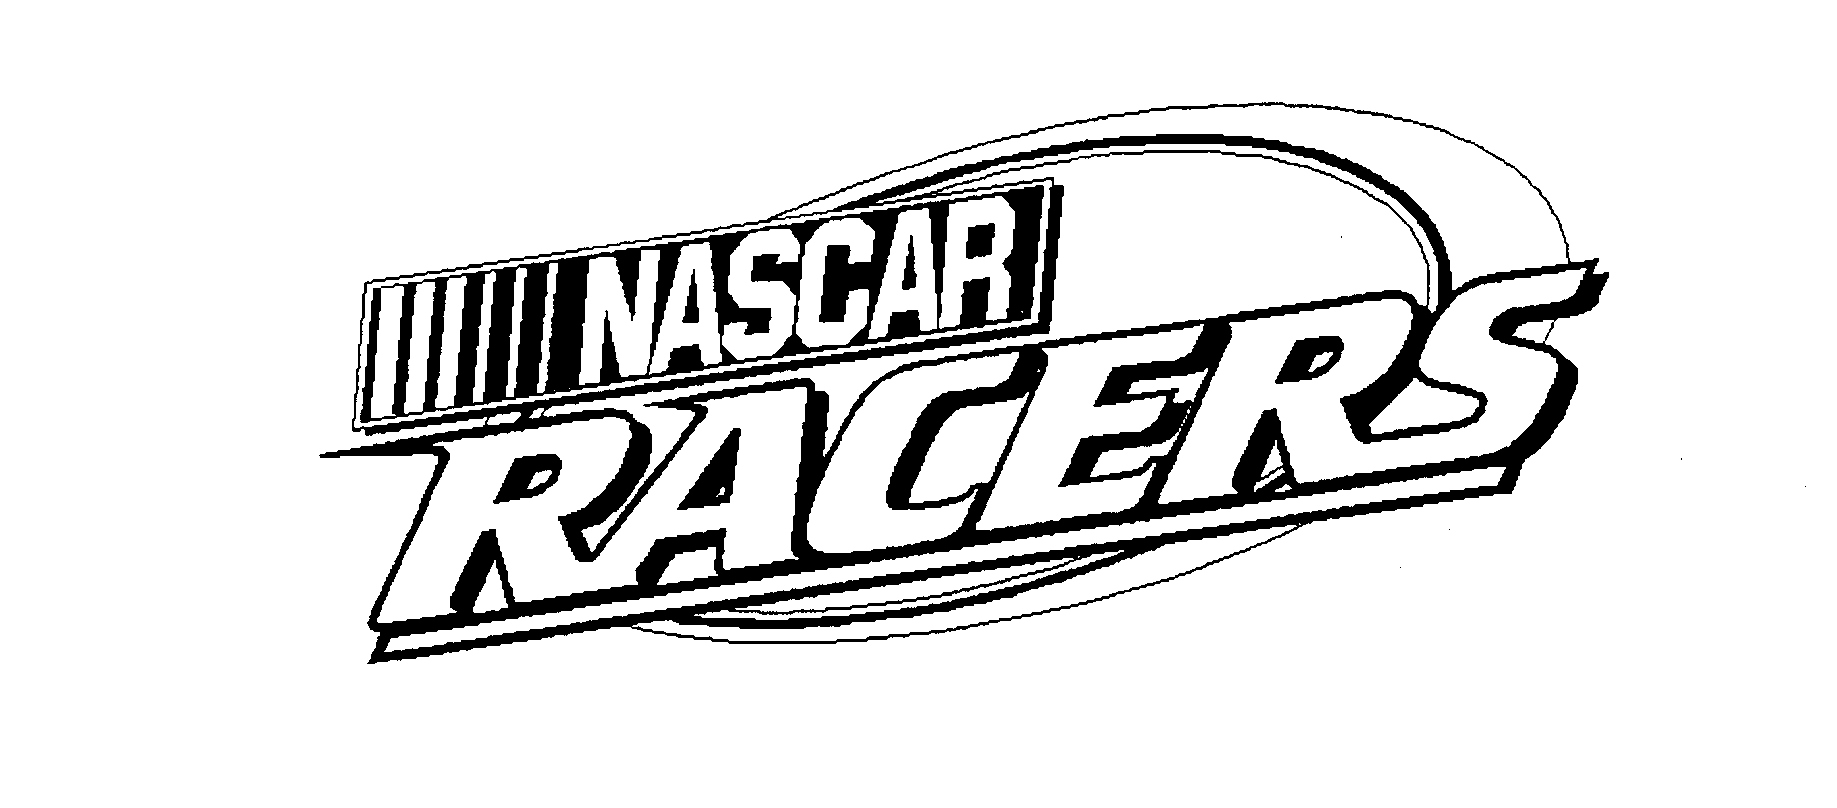  NASCAR RACERS